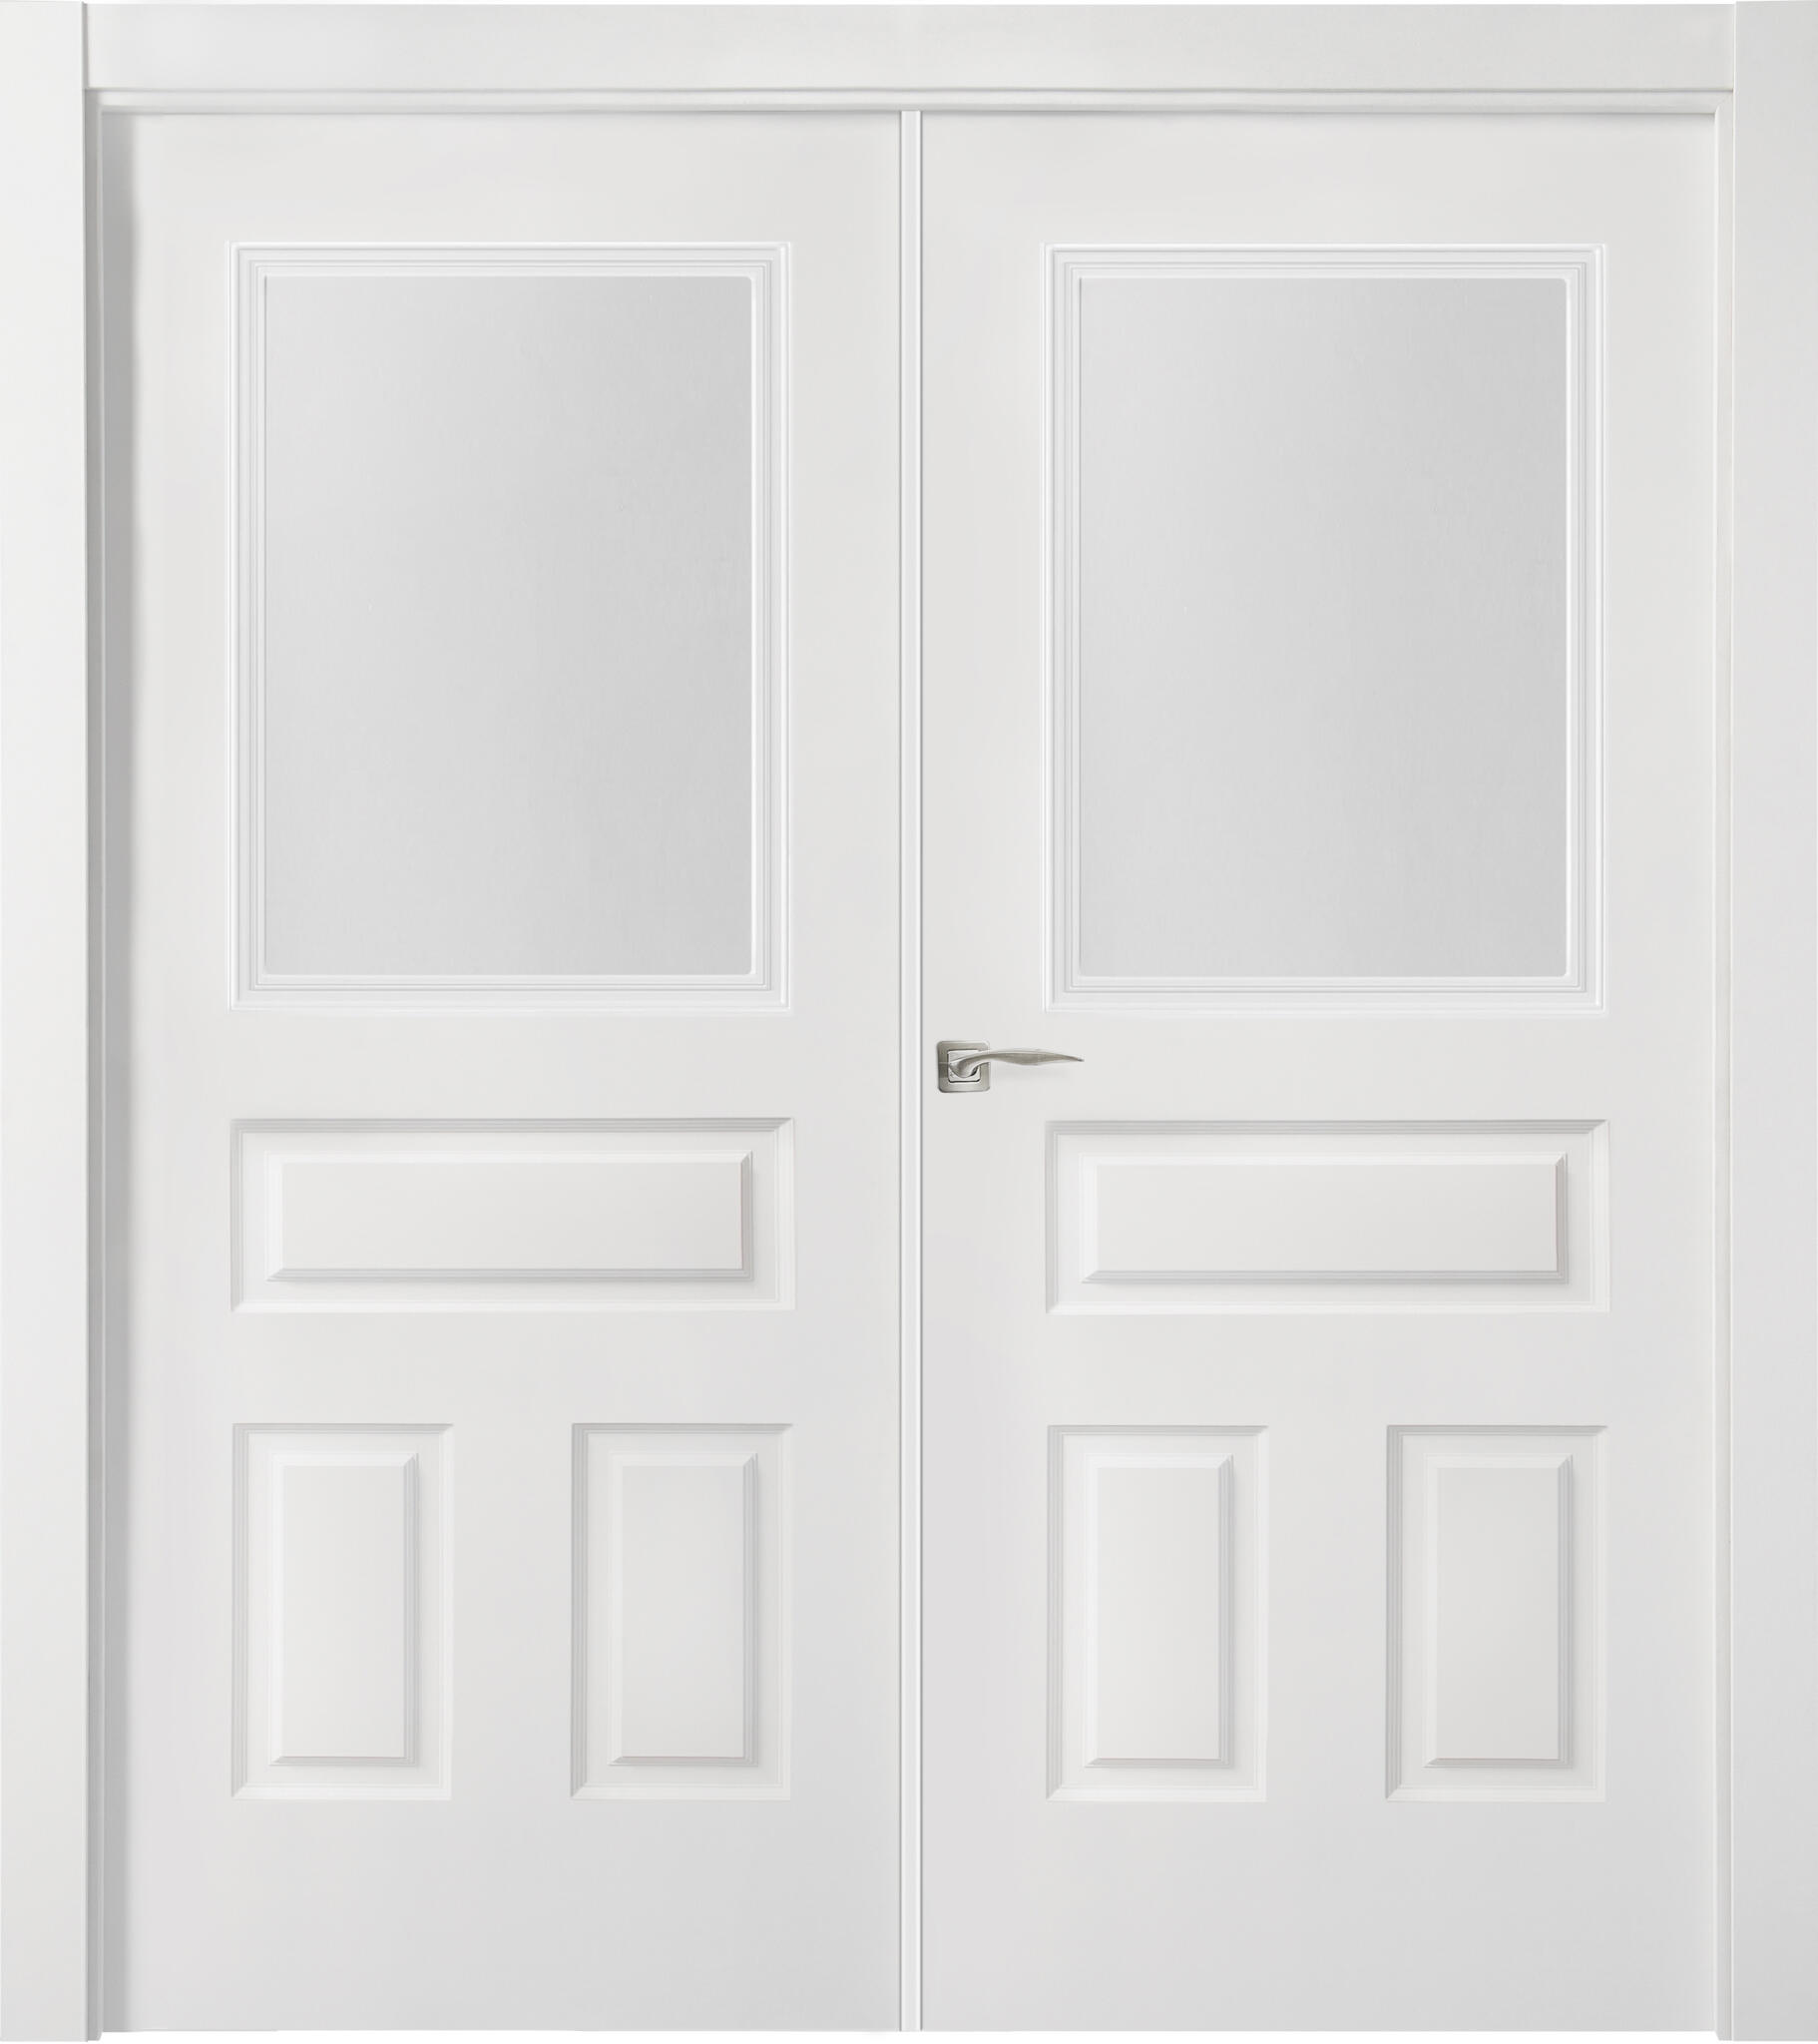 Puerta indiana plus blanco apertura derecha con cristal de 9x145cm